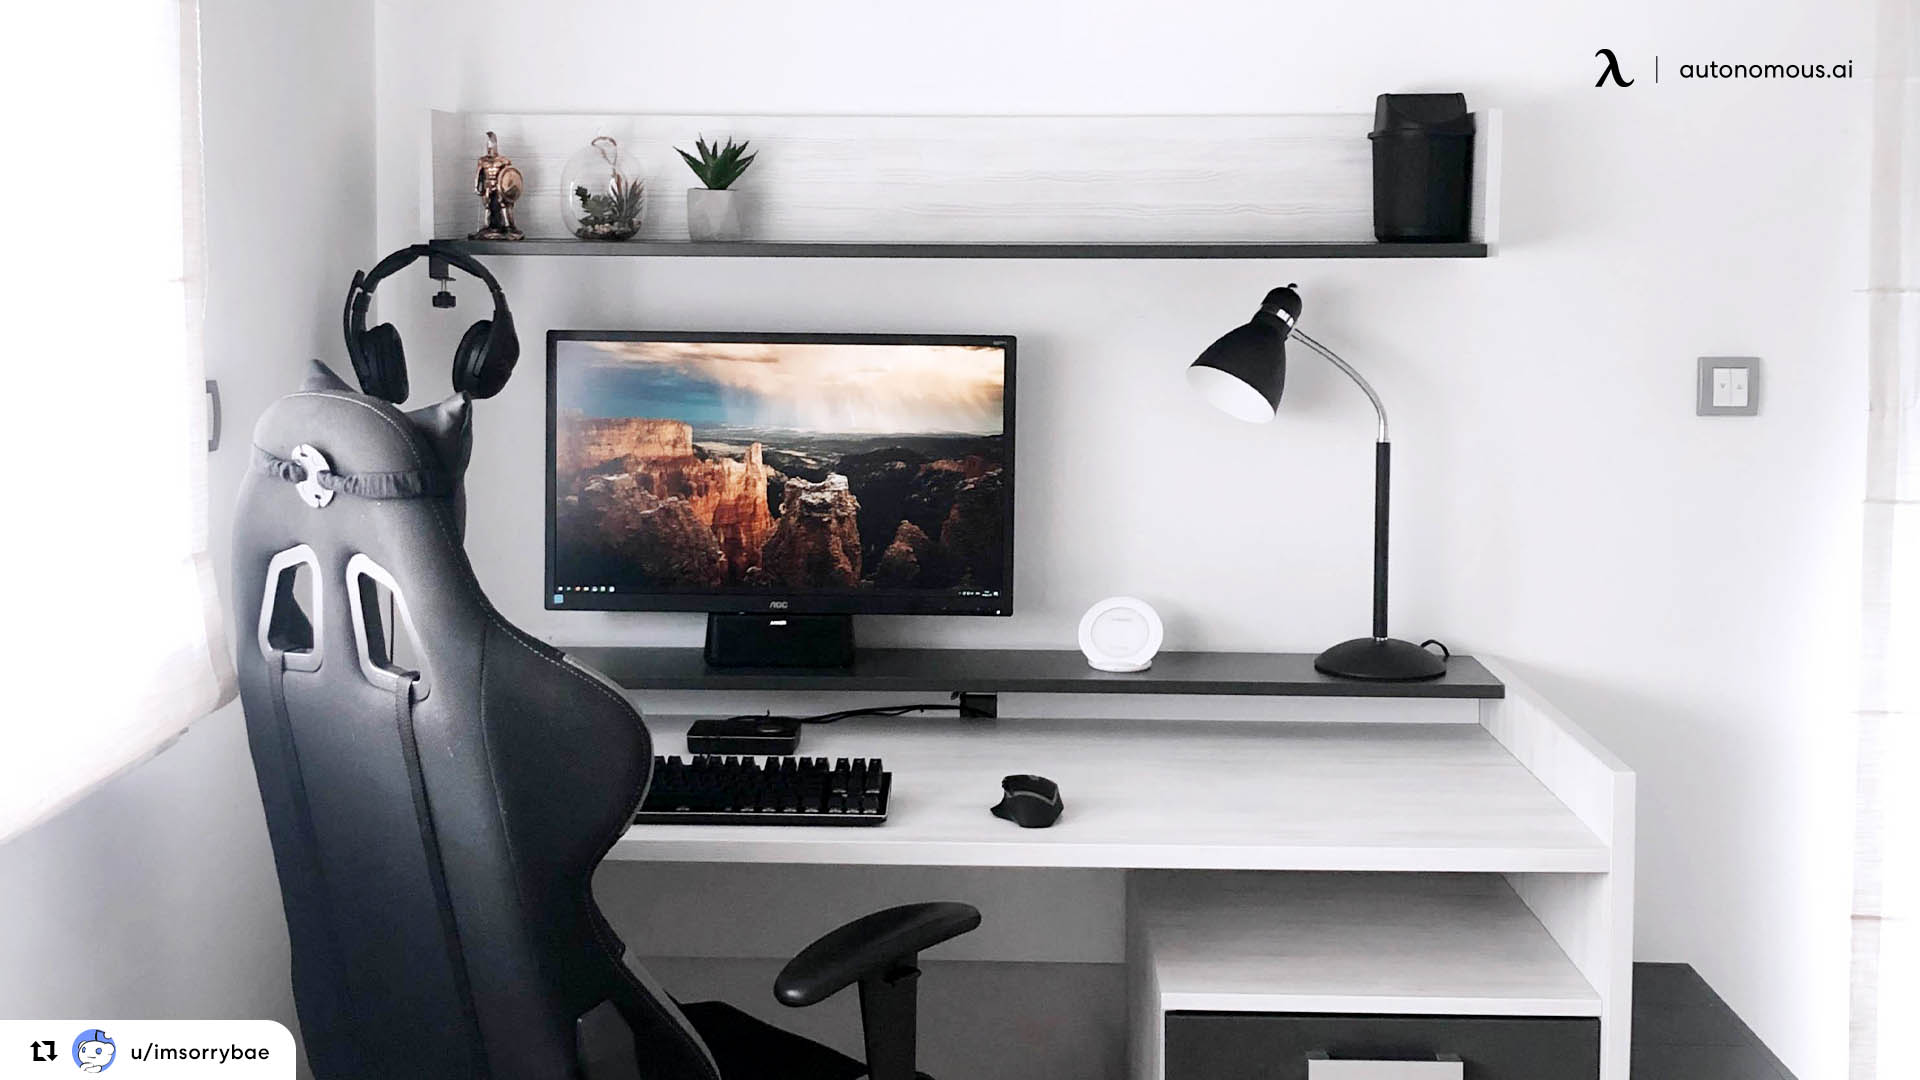 Gaming desk setup